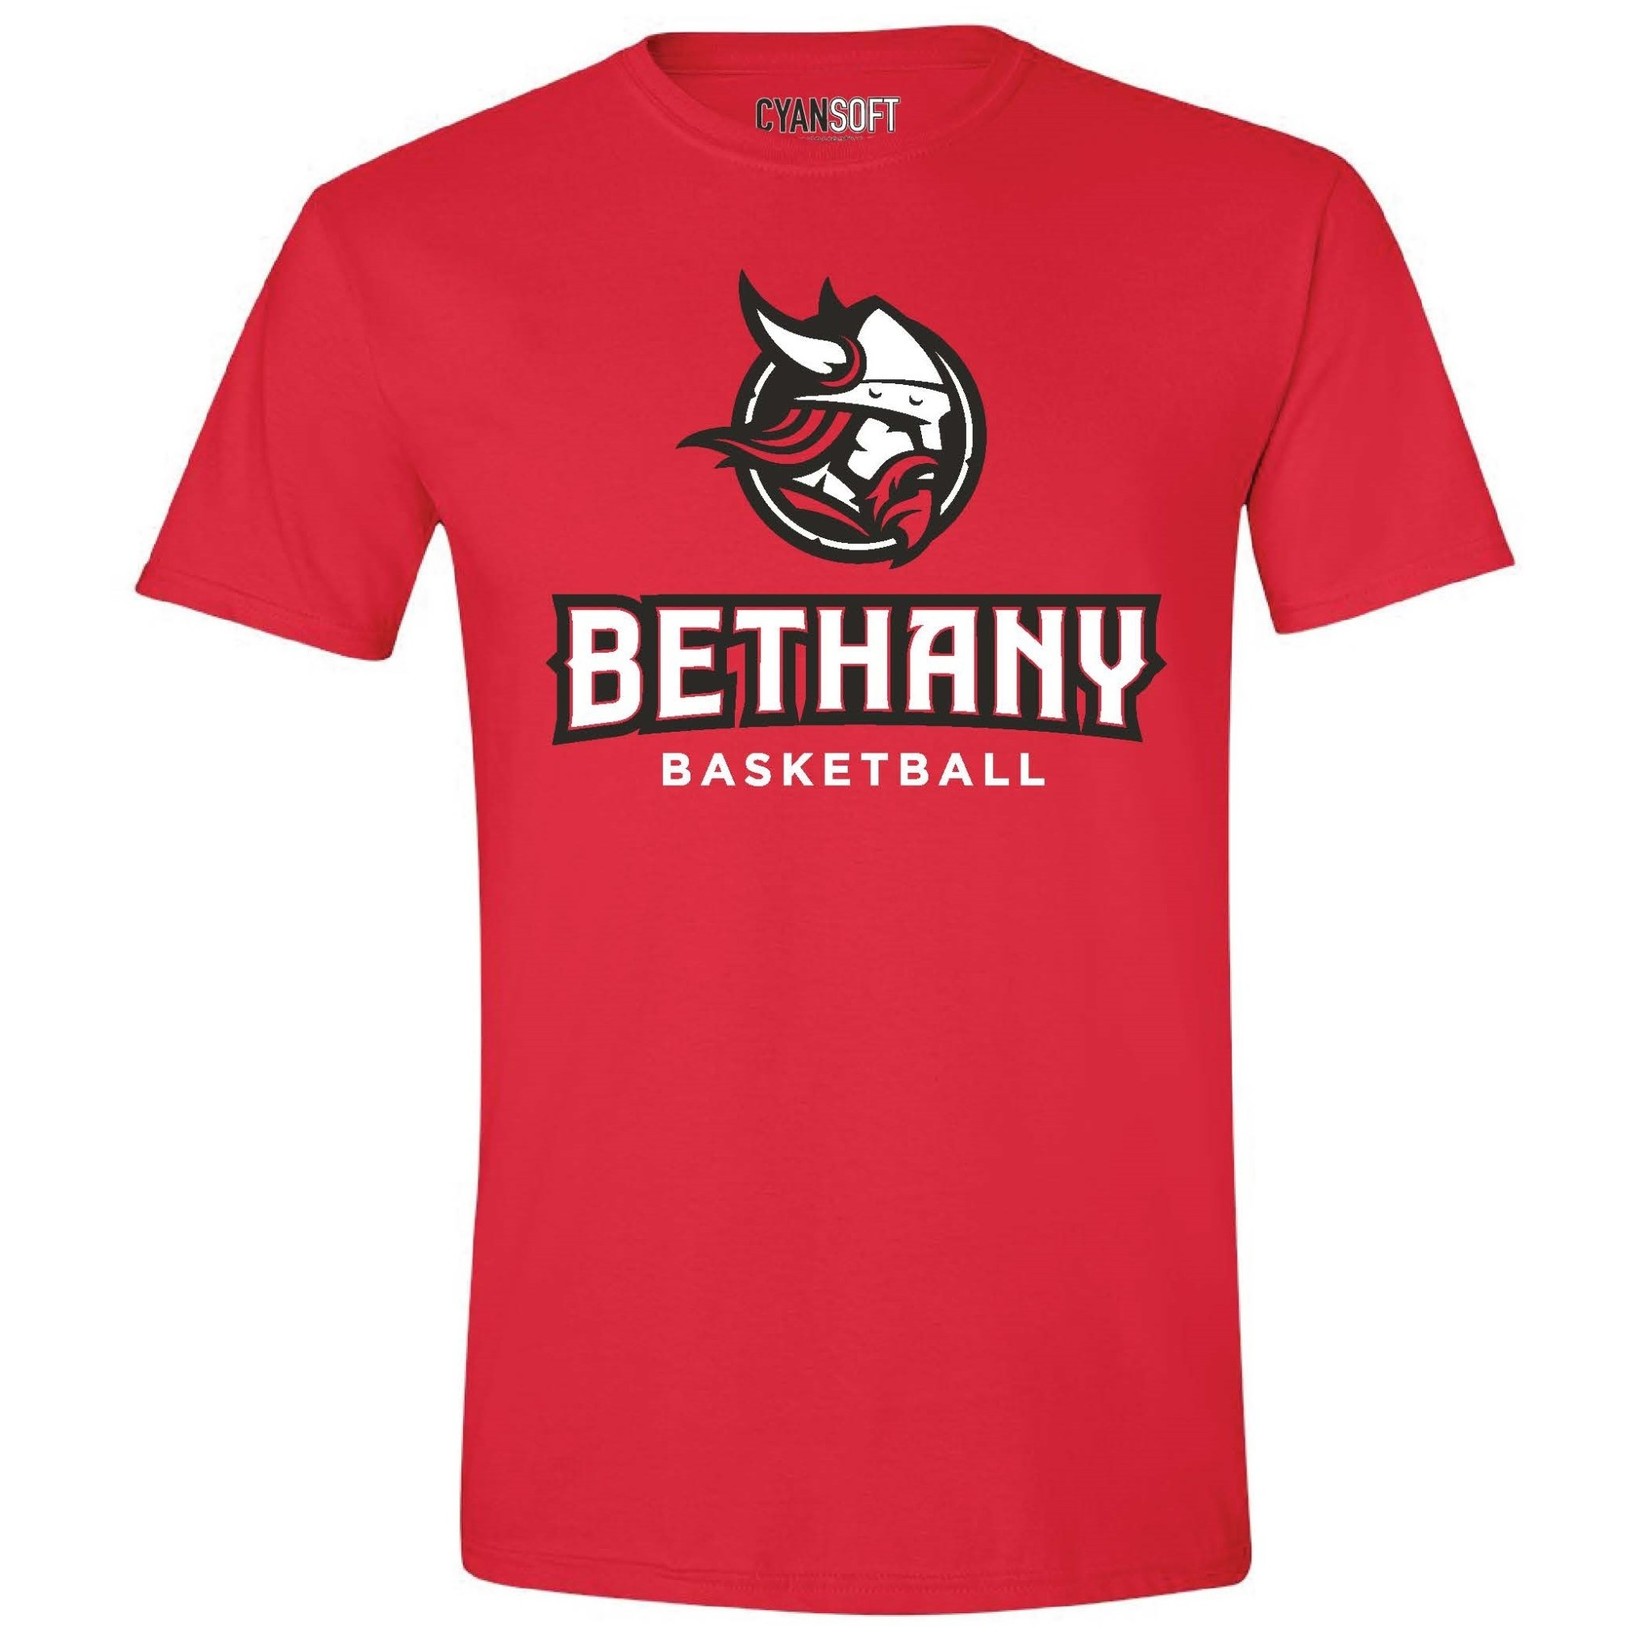 CyanSoft Bethany Basketball T-Shirt